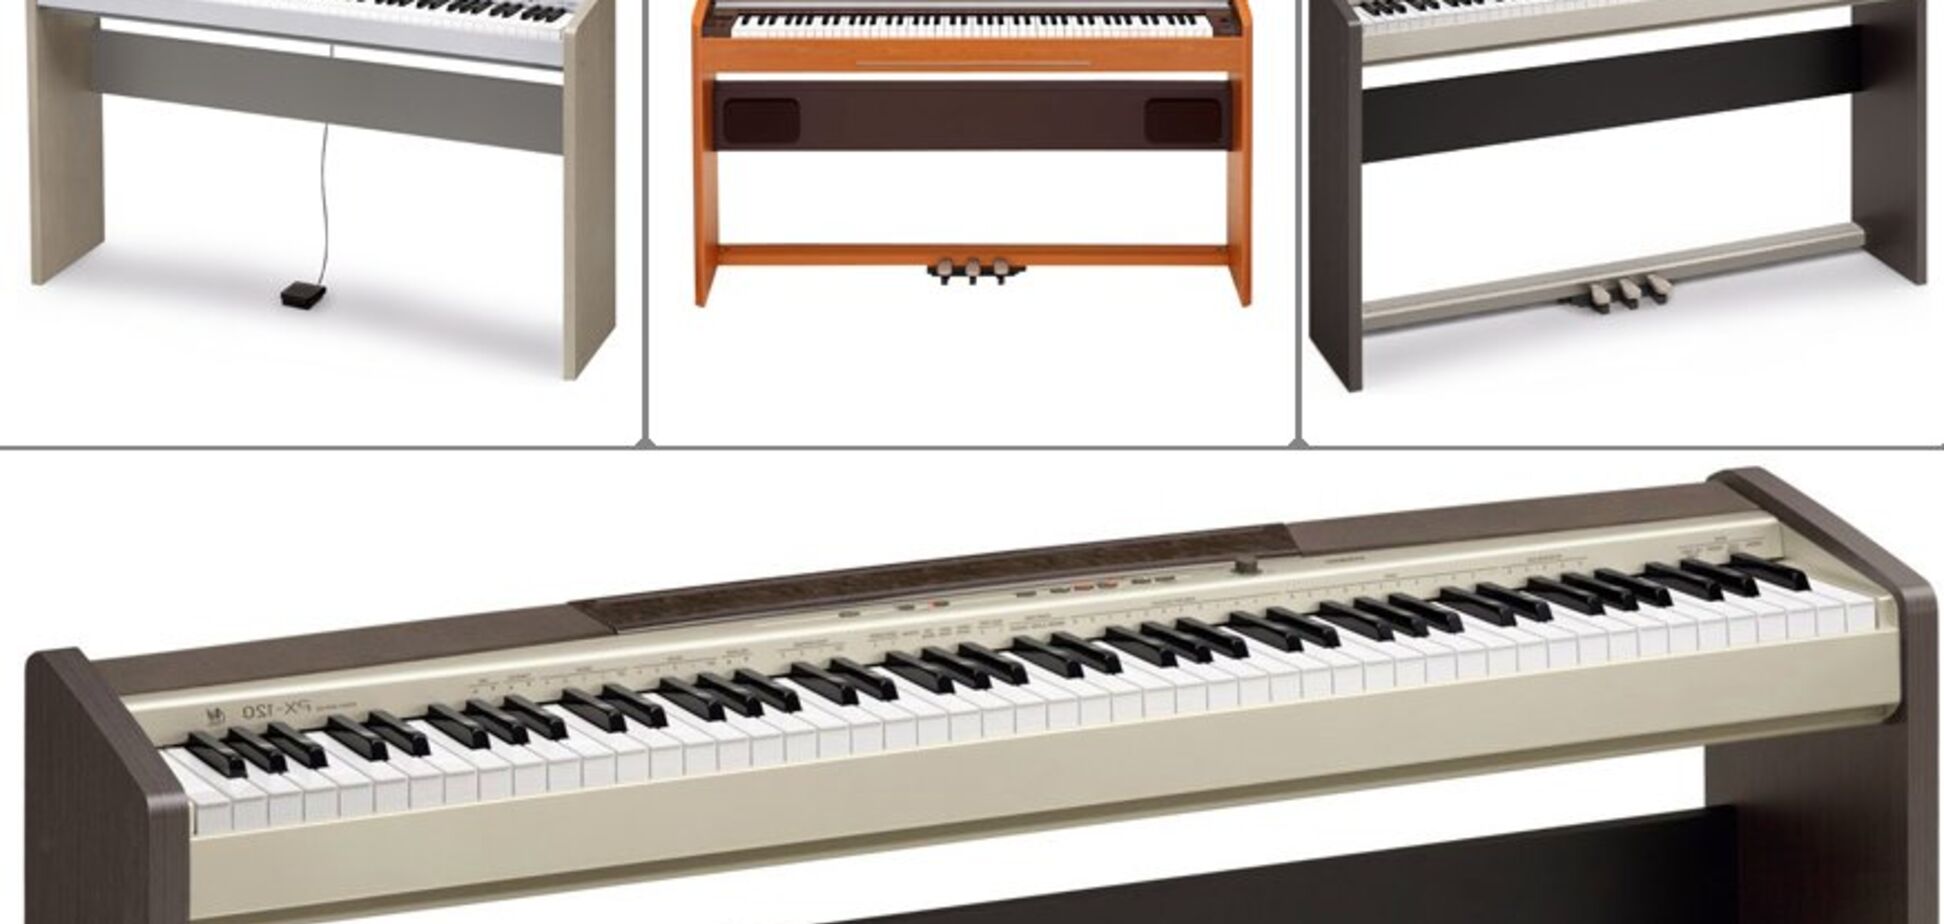 Как выбрать цифровое пианино?